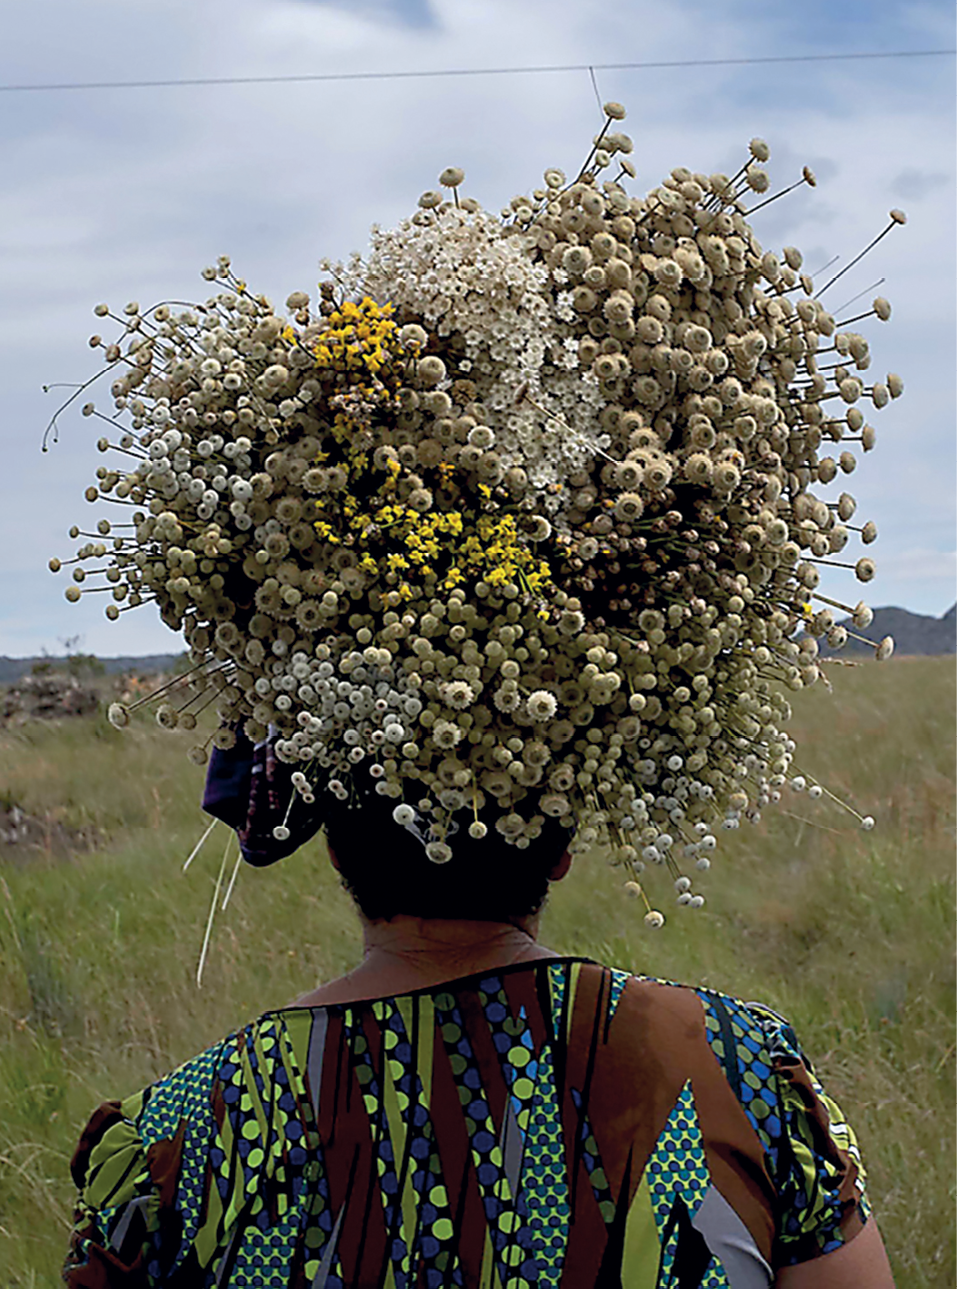 Fotografia. Retrato de uma pessoa vista de costas, de frente para um campo verde formado por gramíneas em uma área de relevo aplainado. Sobre a cabeça ela carrega flores brancas e amarelas.